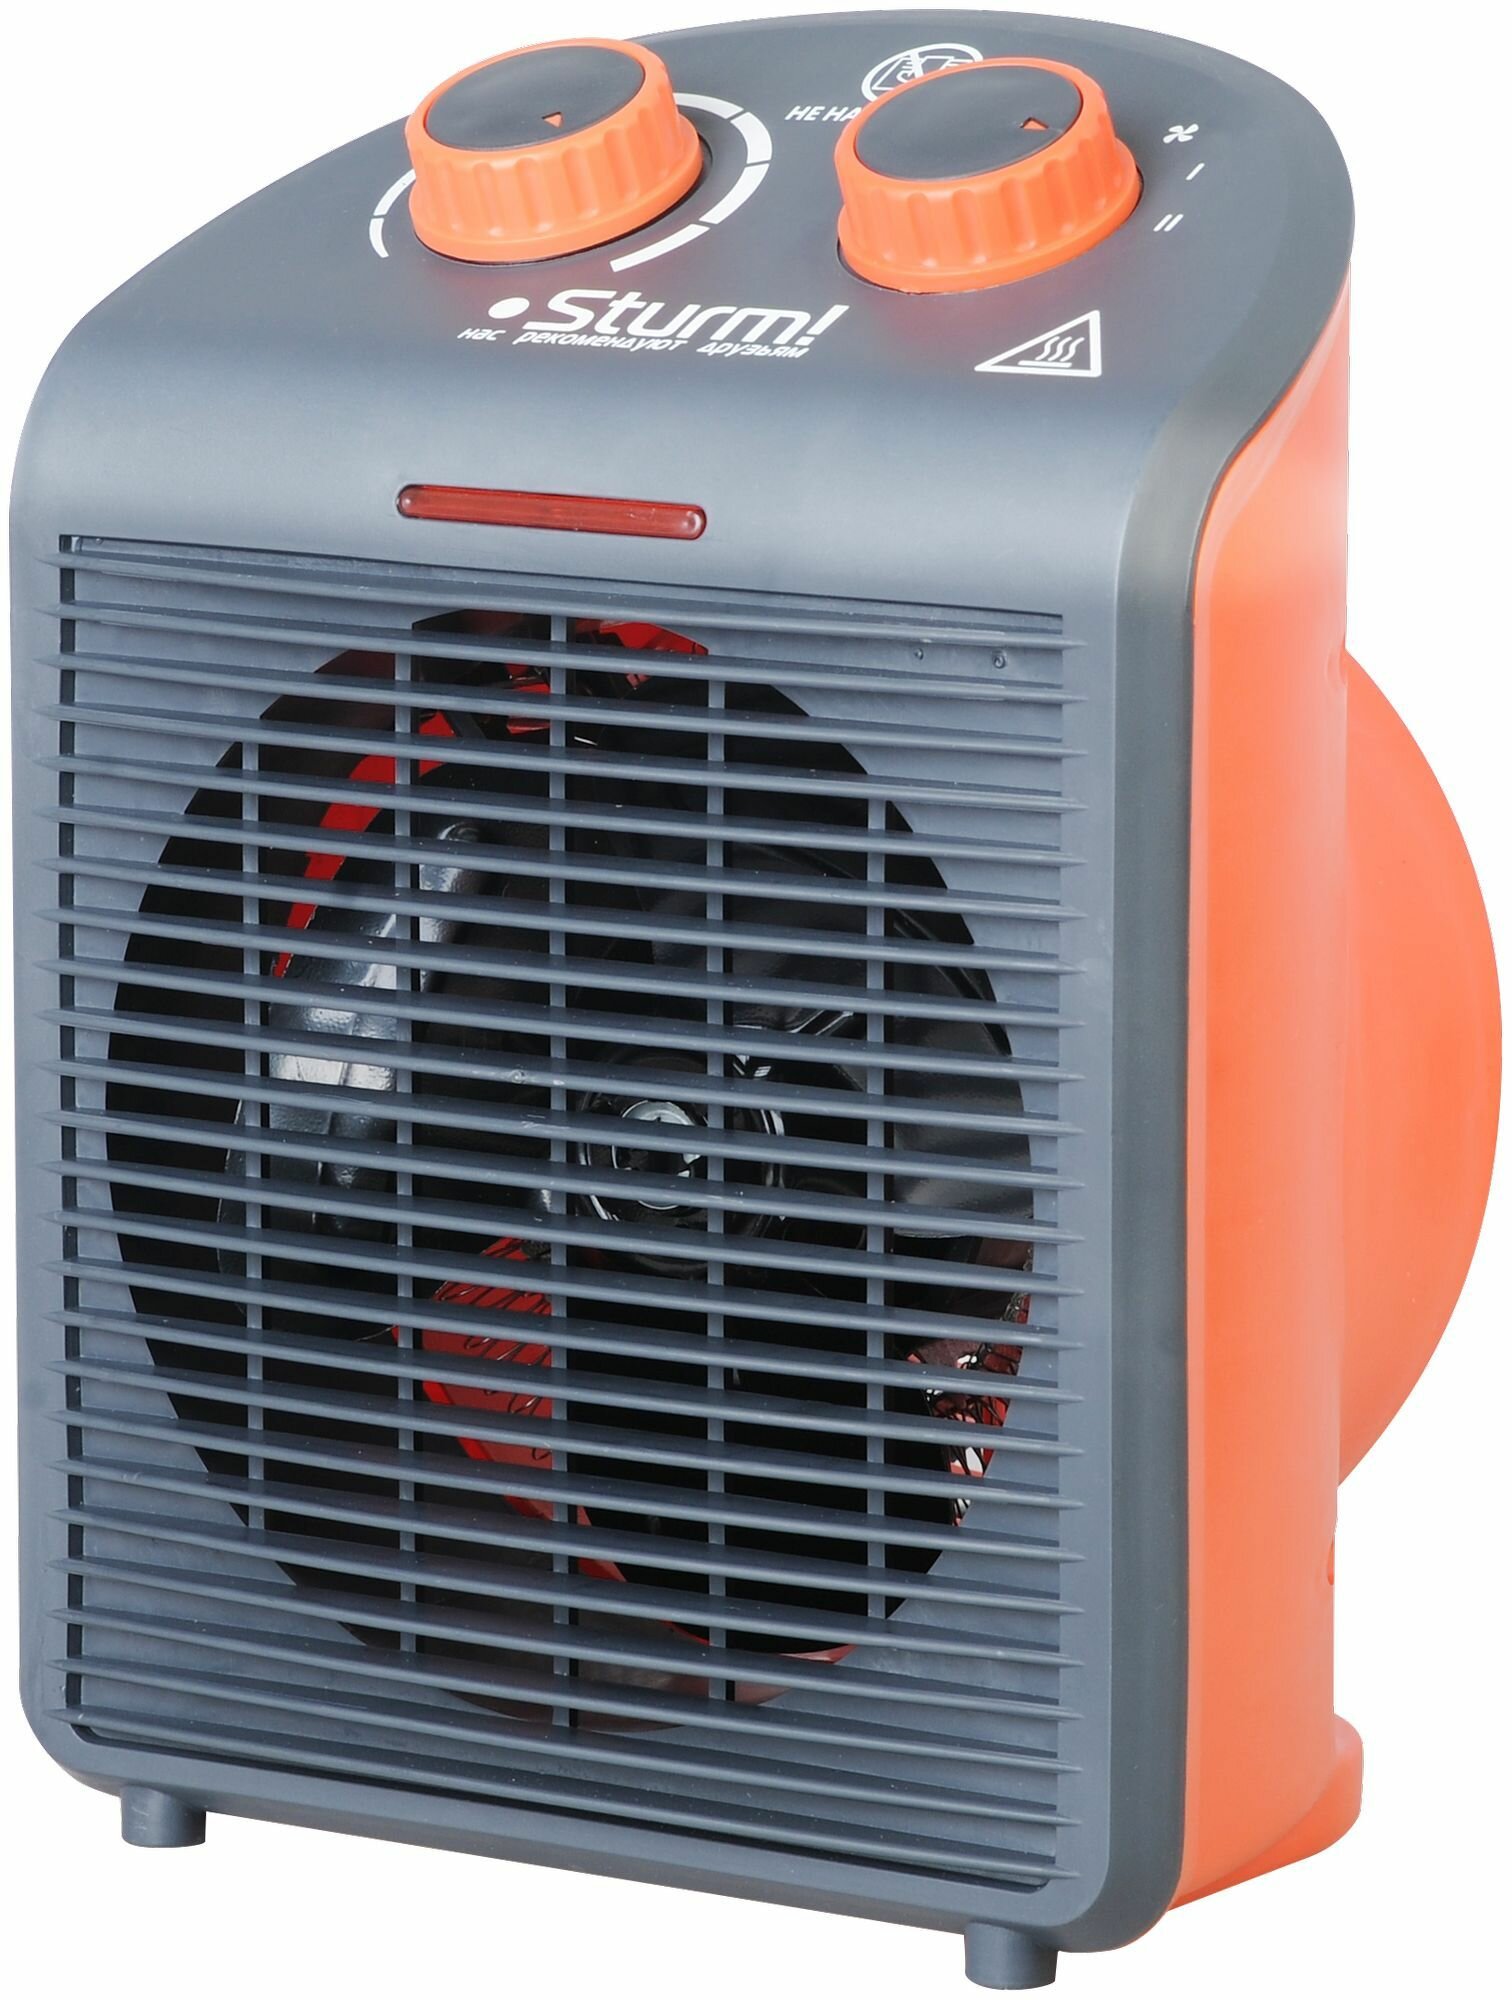 Тепловентилятор STURM! FH2001, 2000Вт, с термостатом, 3 режима, черный, оранжевый